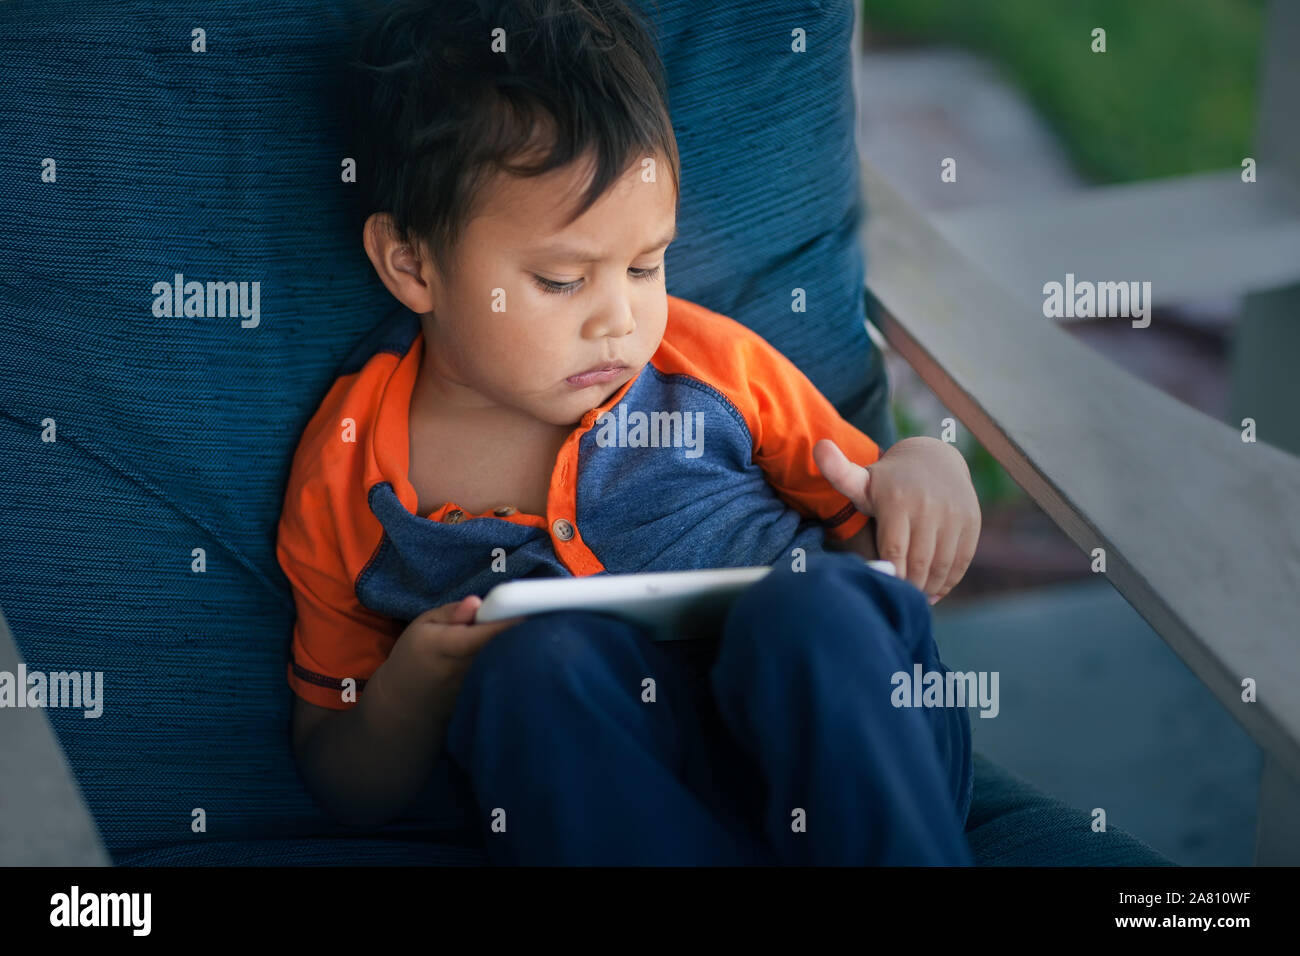 Ein kleines Kind im Web surfen, ohne Kindersicherung und sieht gestört. Stockfoto